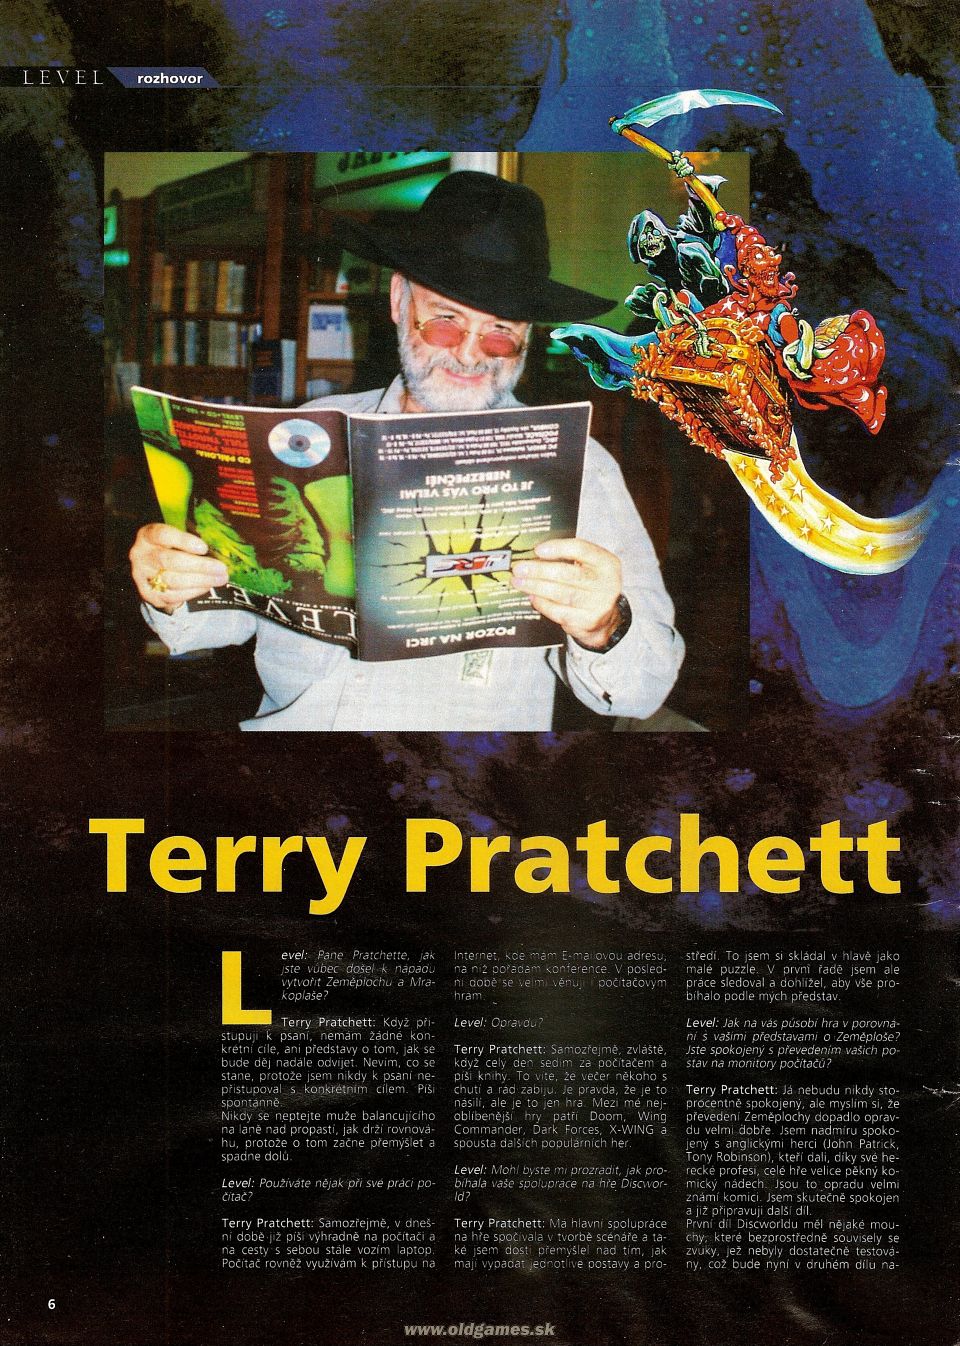 Interview: Terry Pratchett